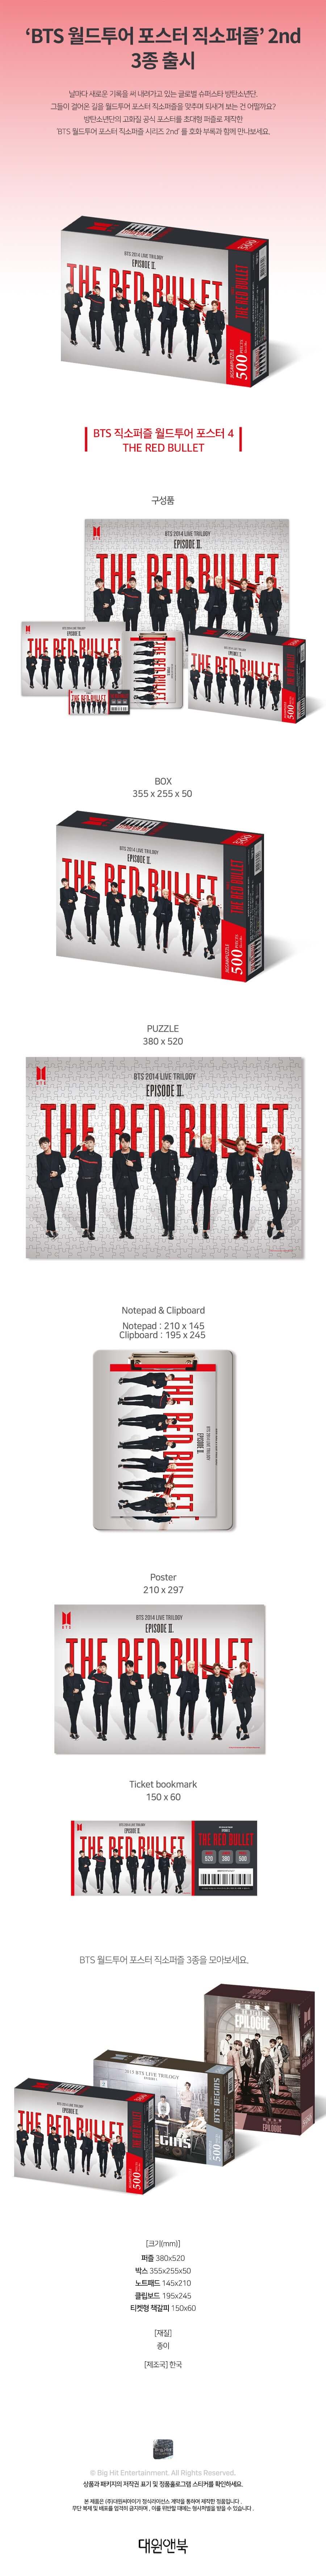 BTS ジグソー パズル ワールド ツアー ポスター 4: The Red Bullet